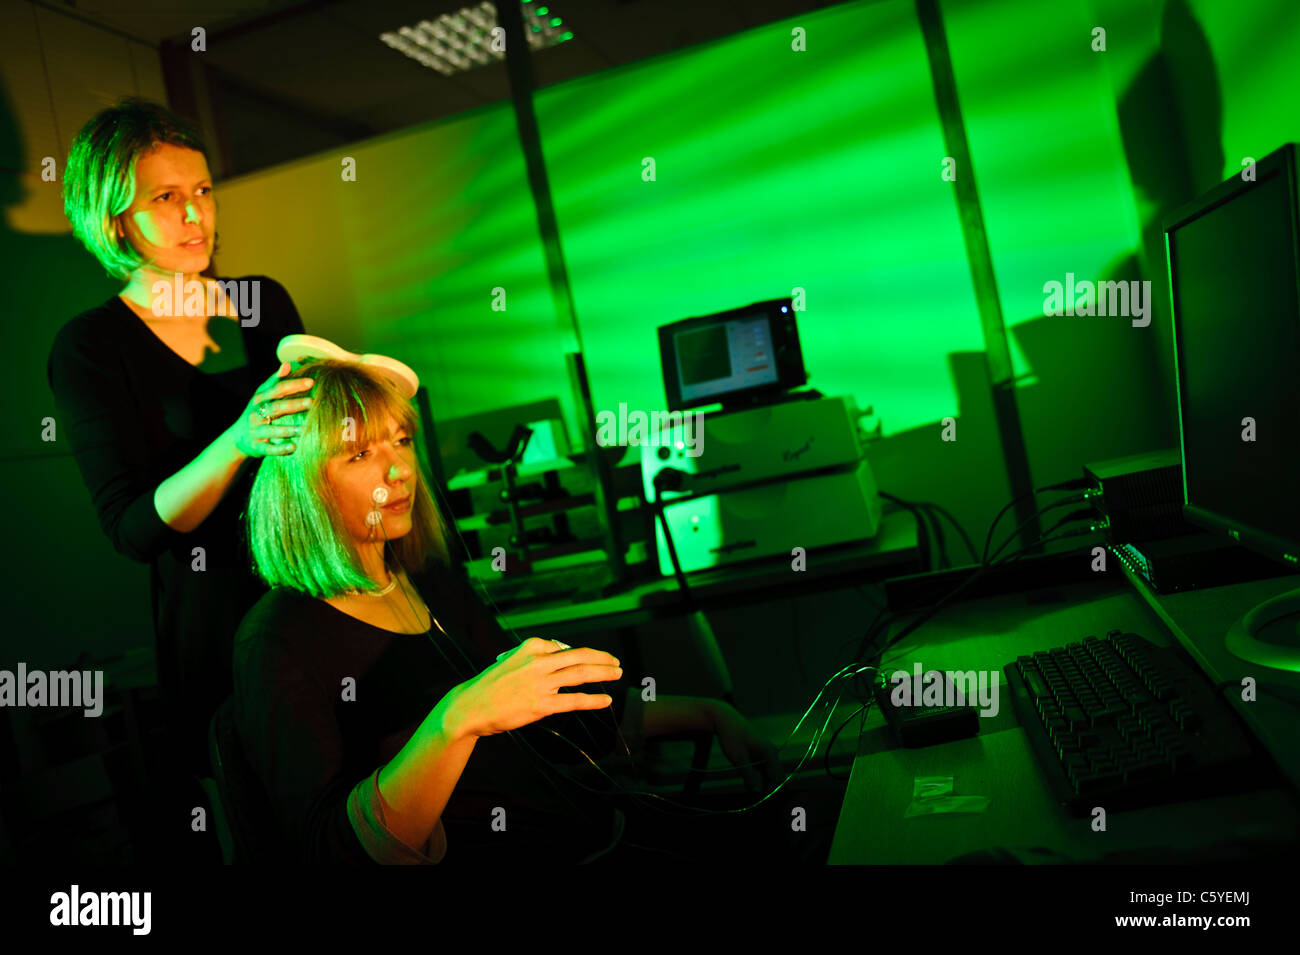 Neurowissenschaftler mit Schlüssel förmigen Paddel Transcranial magnetische Anregung TMS Thema sitzen im Labor Lit grüne durchführen Stockfoto